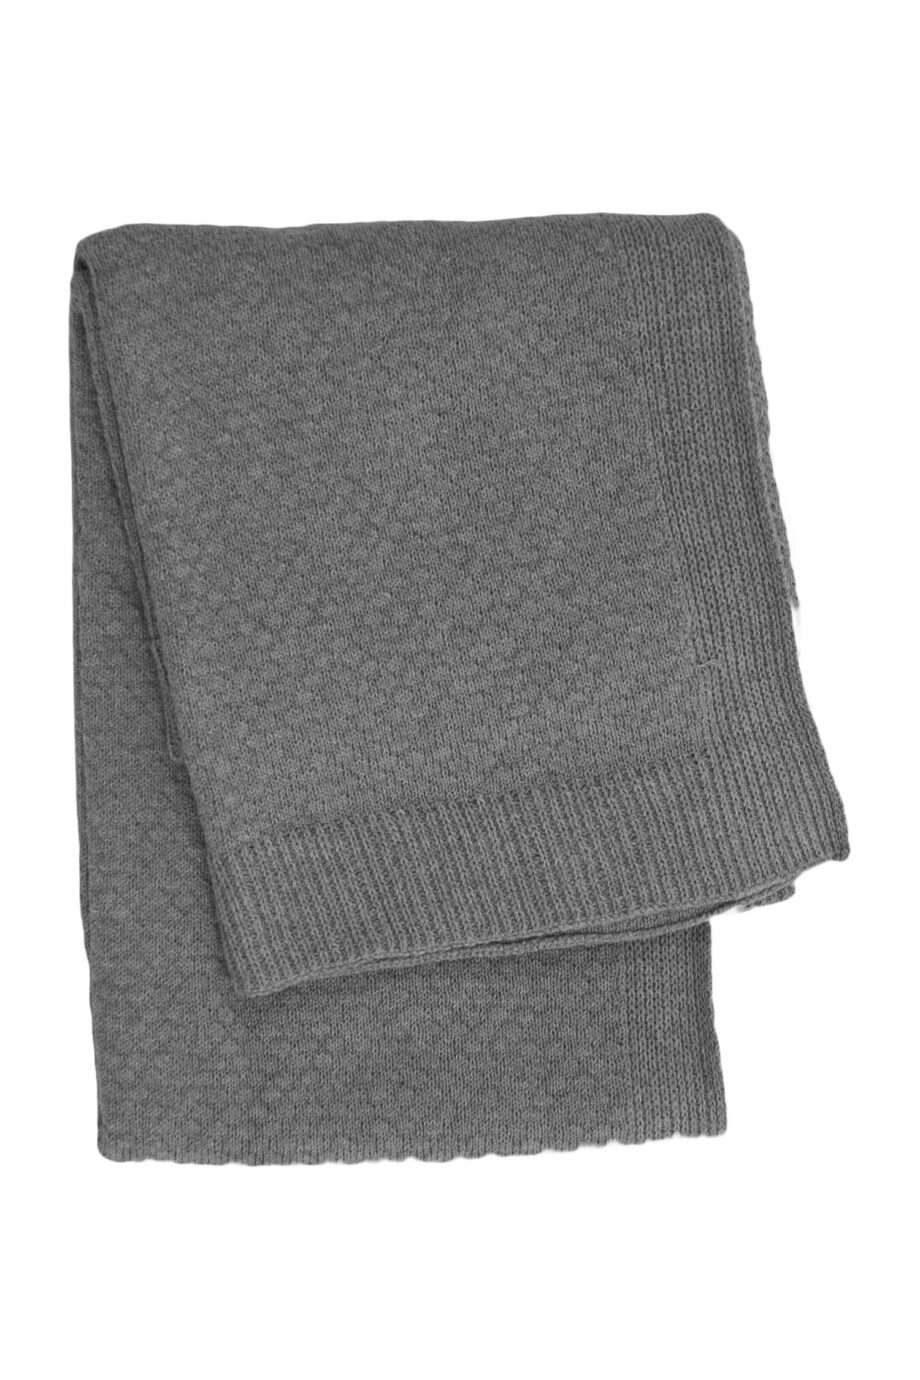 liz grey knitted cotton little blanket medium